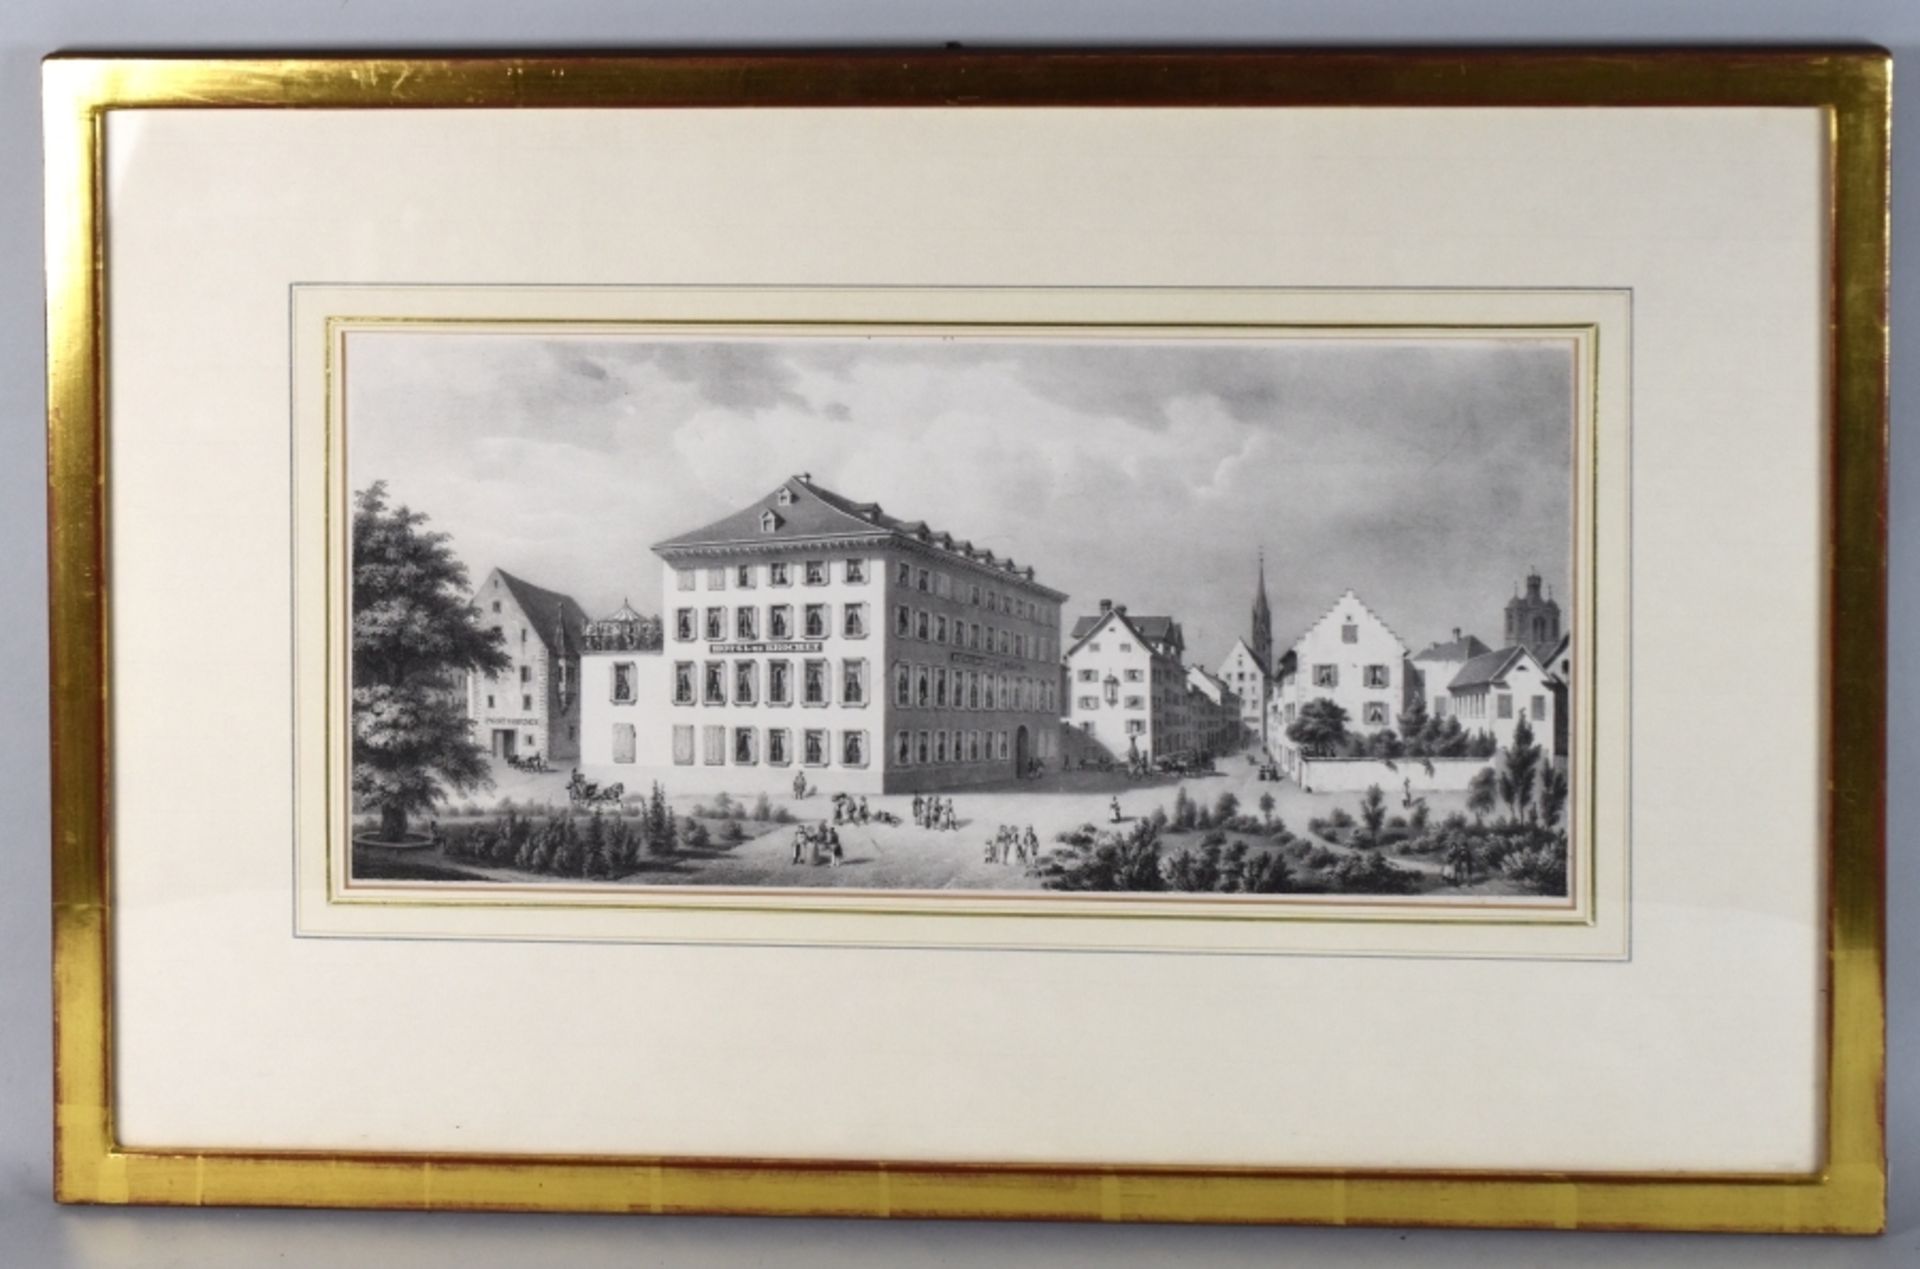 HOTEL HECHT KONSTANZ um 1840 von A. F. Pecht - Bild 2 aus 2